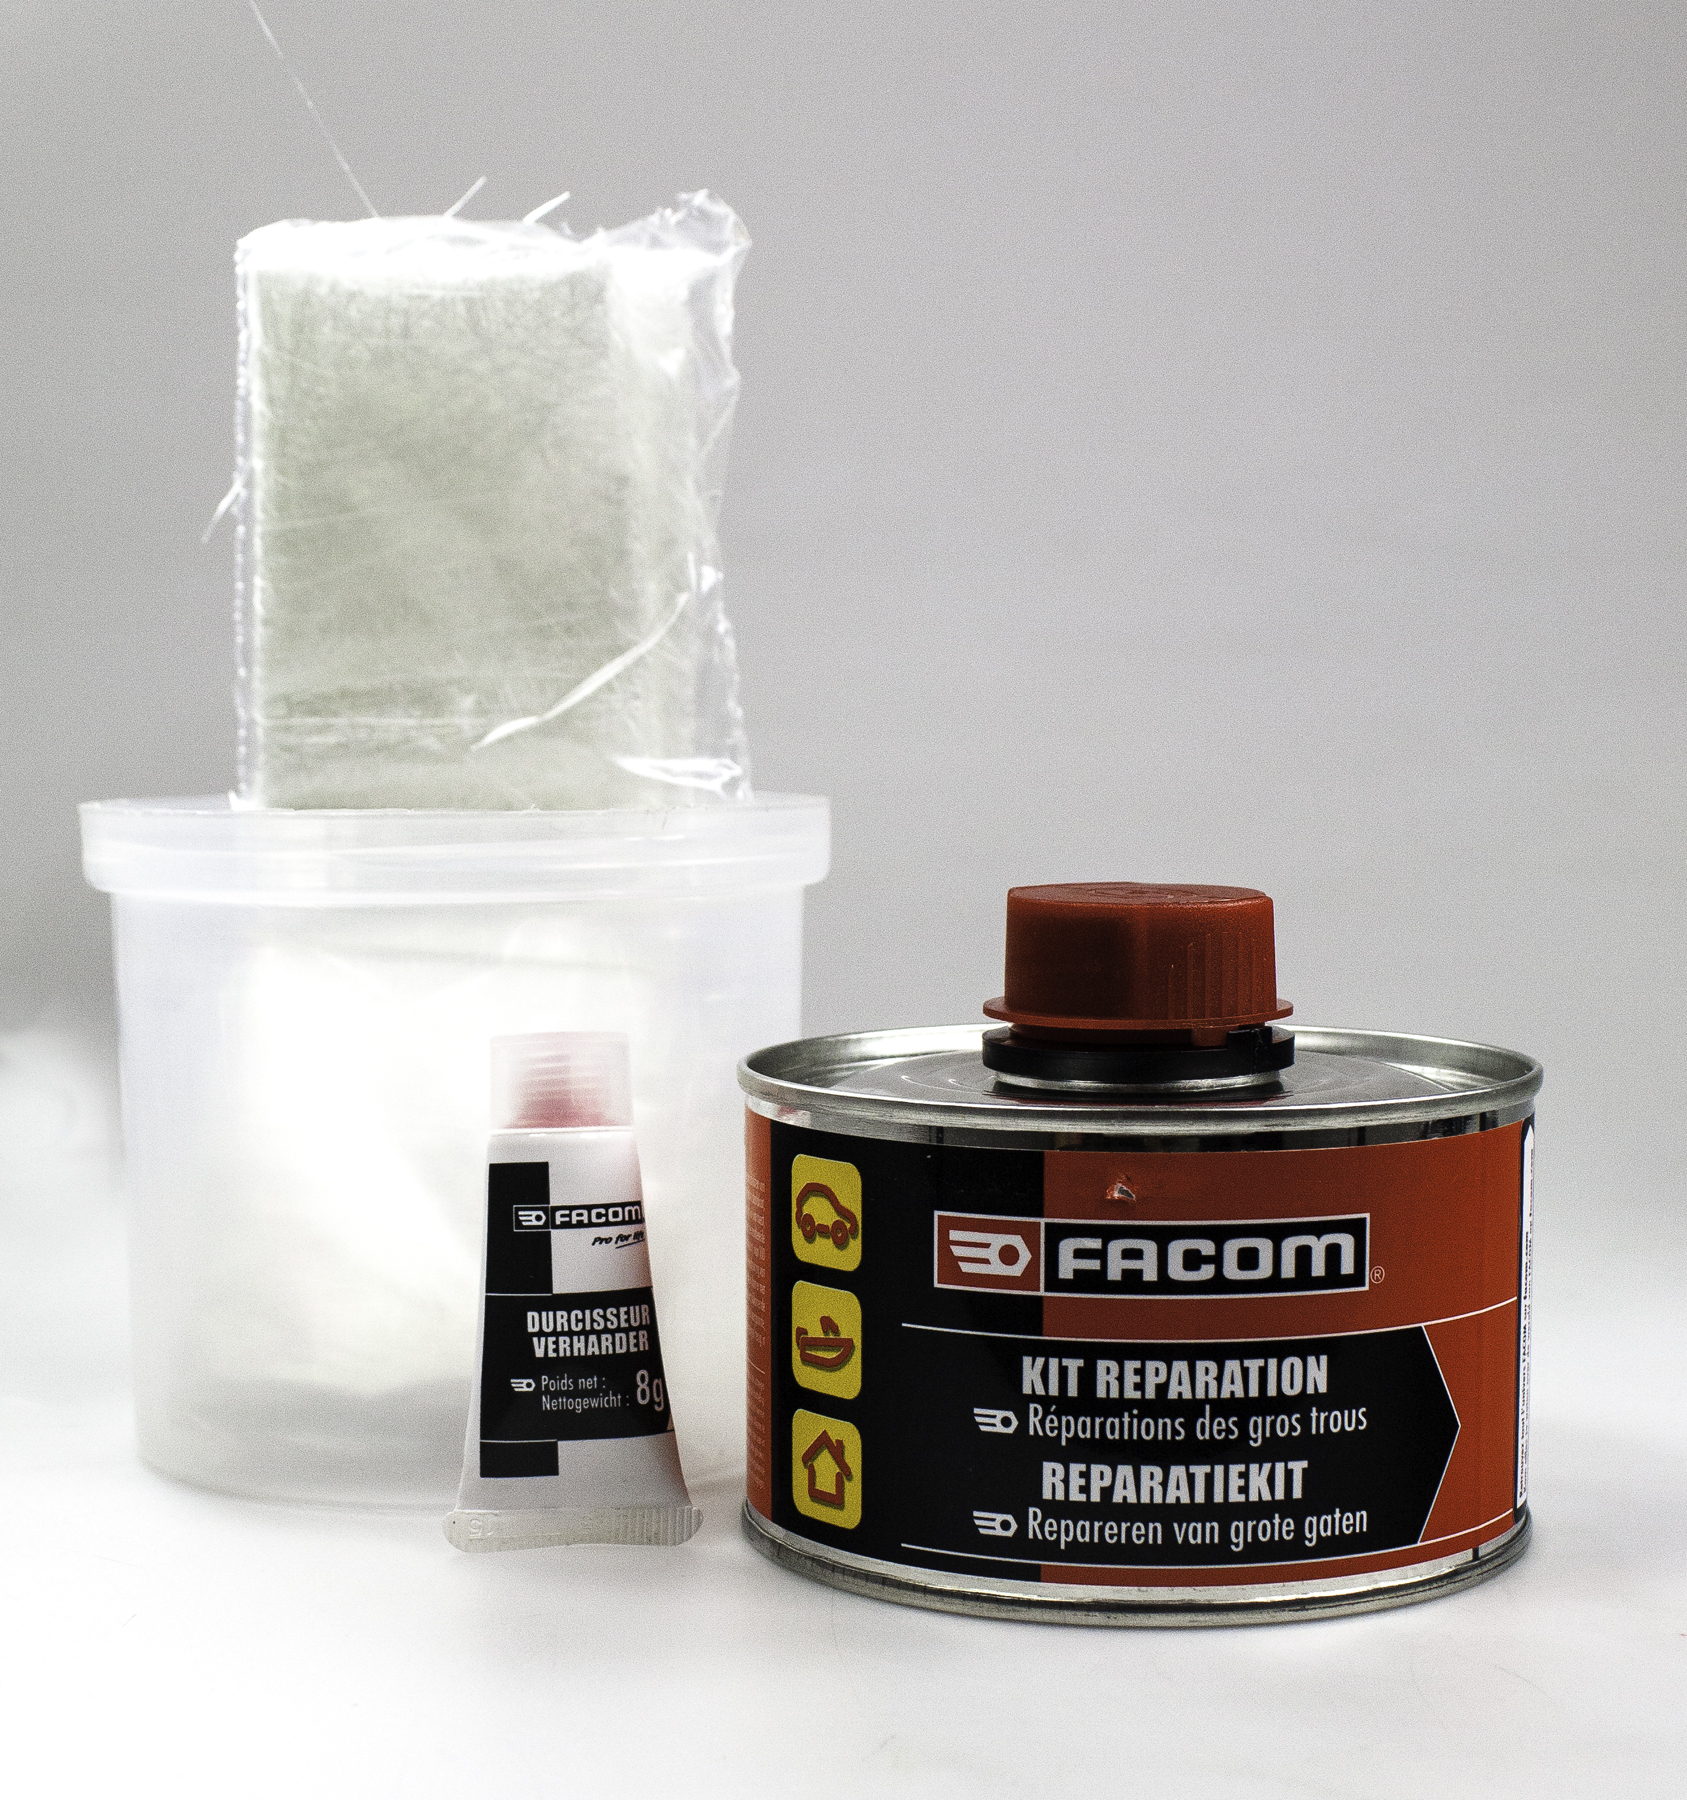 FACOM kit réparation(résine/mat verre) 250g – Etape Auto